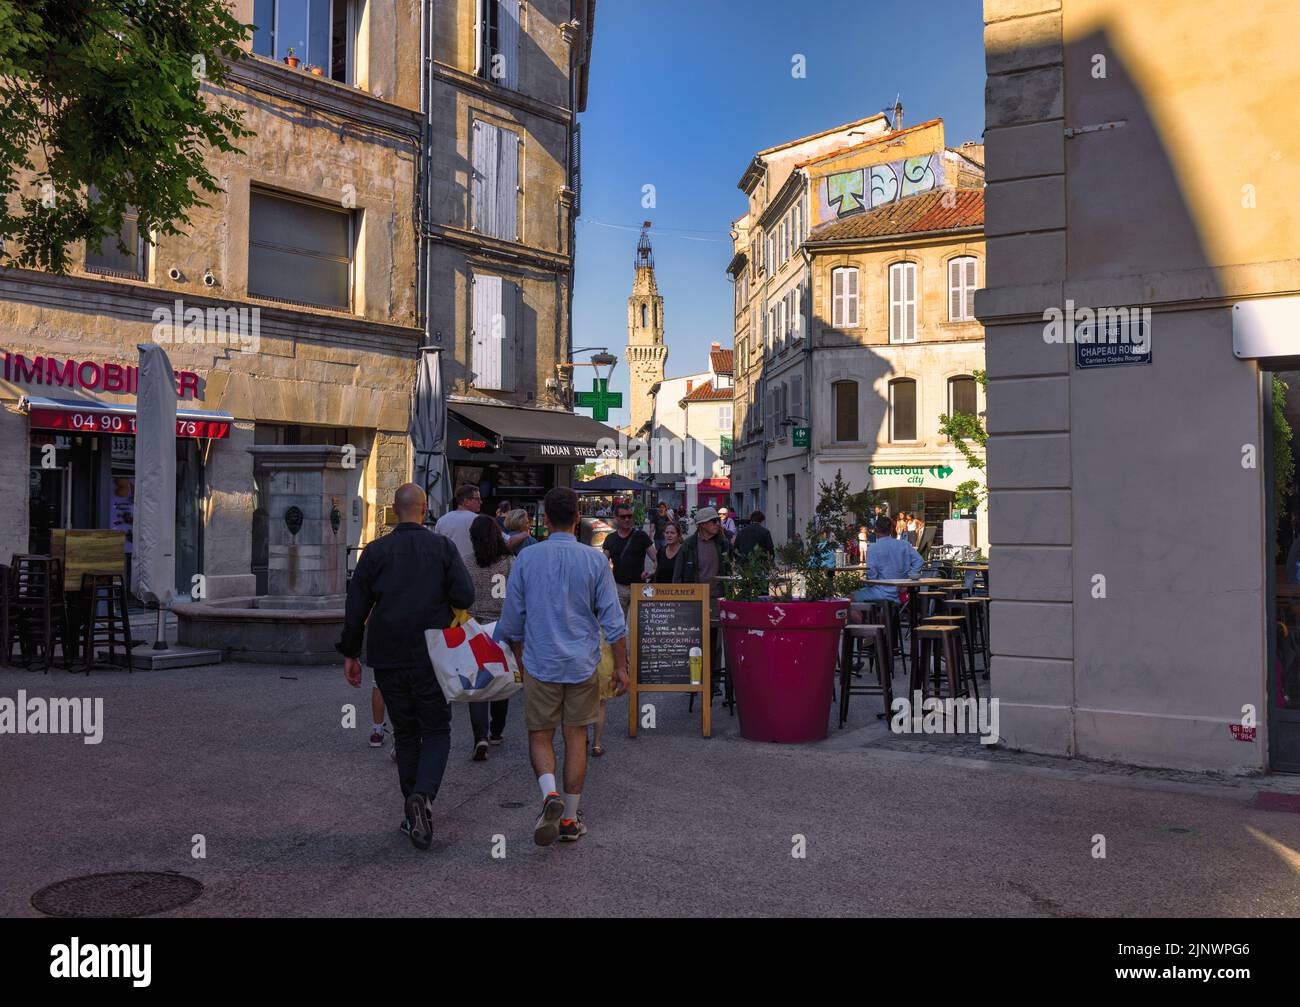 Escena típica de la calle. Campanario de la Couvent des Augustins, el Convento de Agustín, en el fondo. Avignon, Vaucluse, Francia. Foto de stock